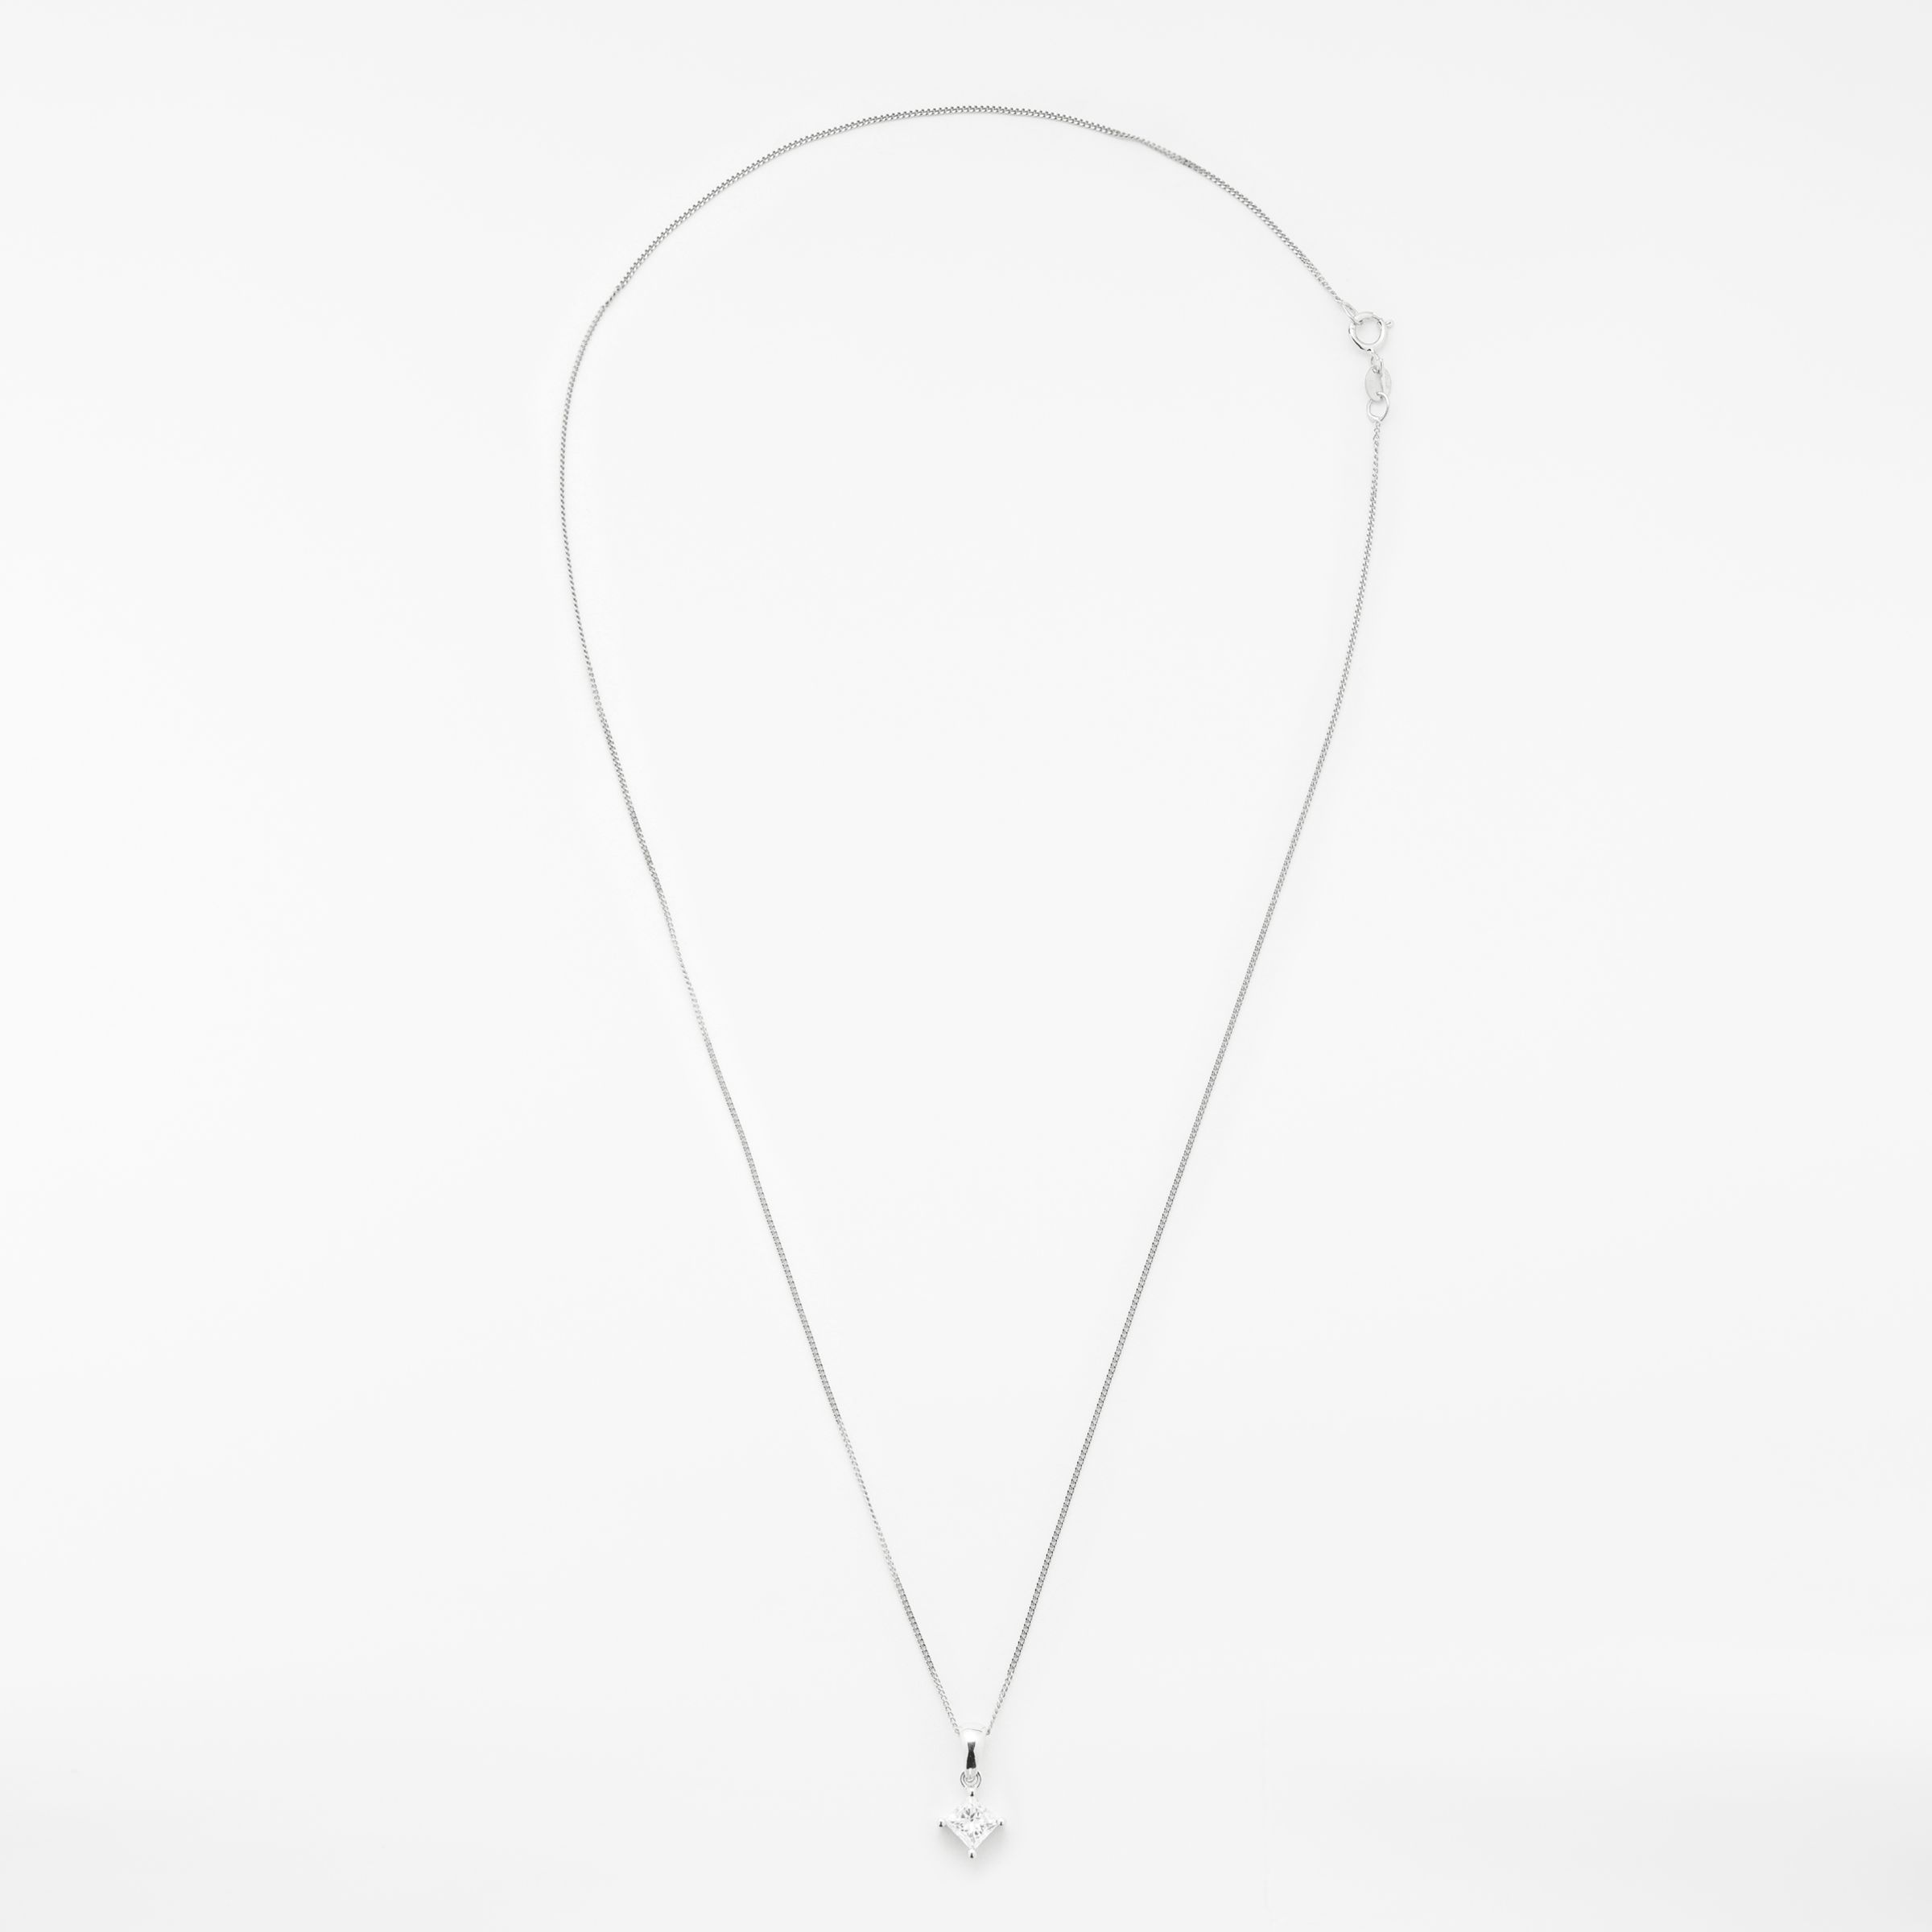 Buy Mogul 18ct White Gold Princess Cut Solitaire Diamond Pendant Necklace, 0.5ct Online at johnlewis.com